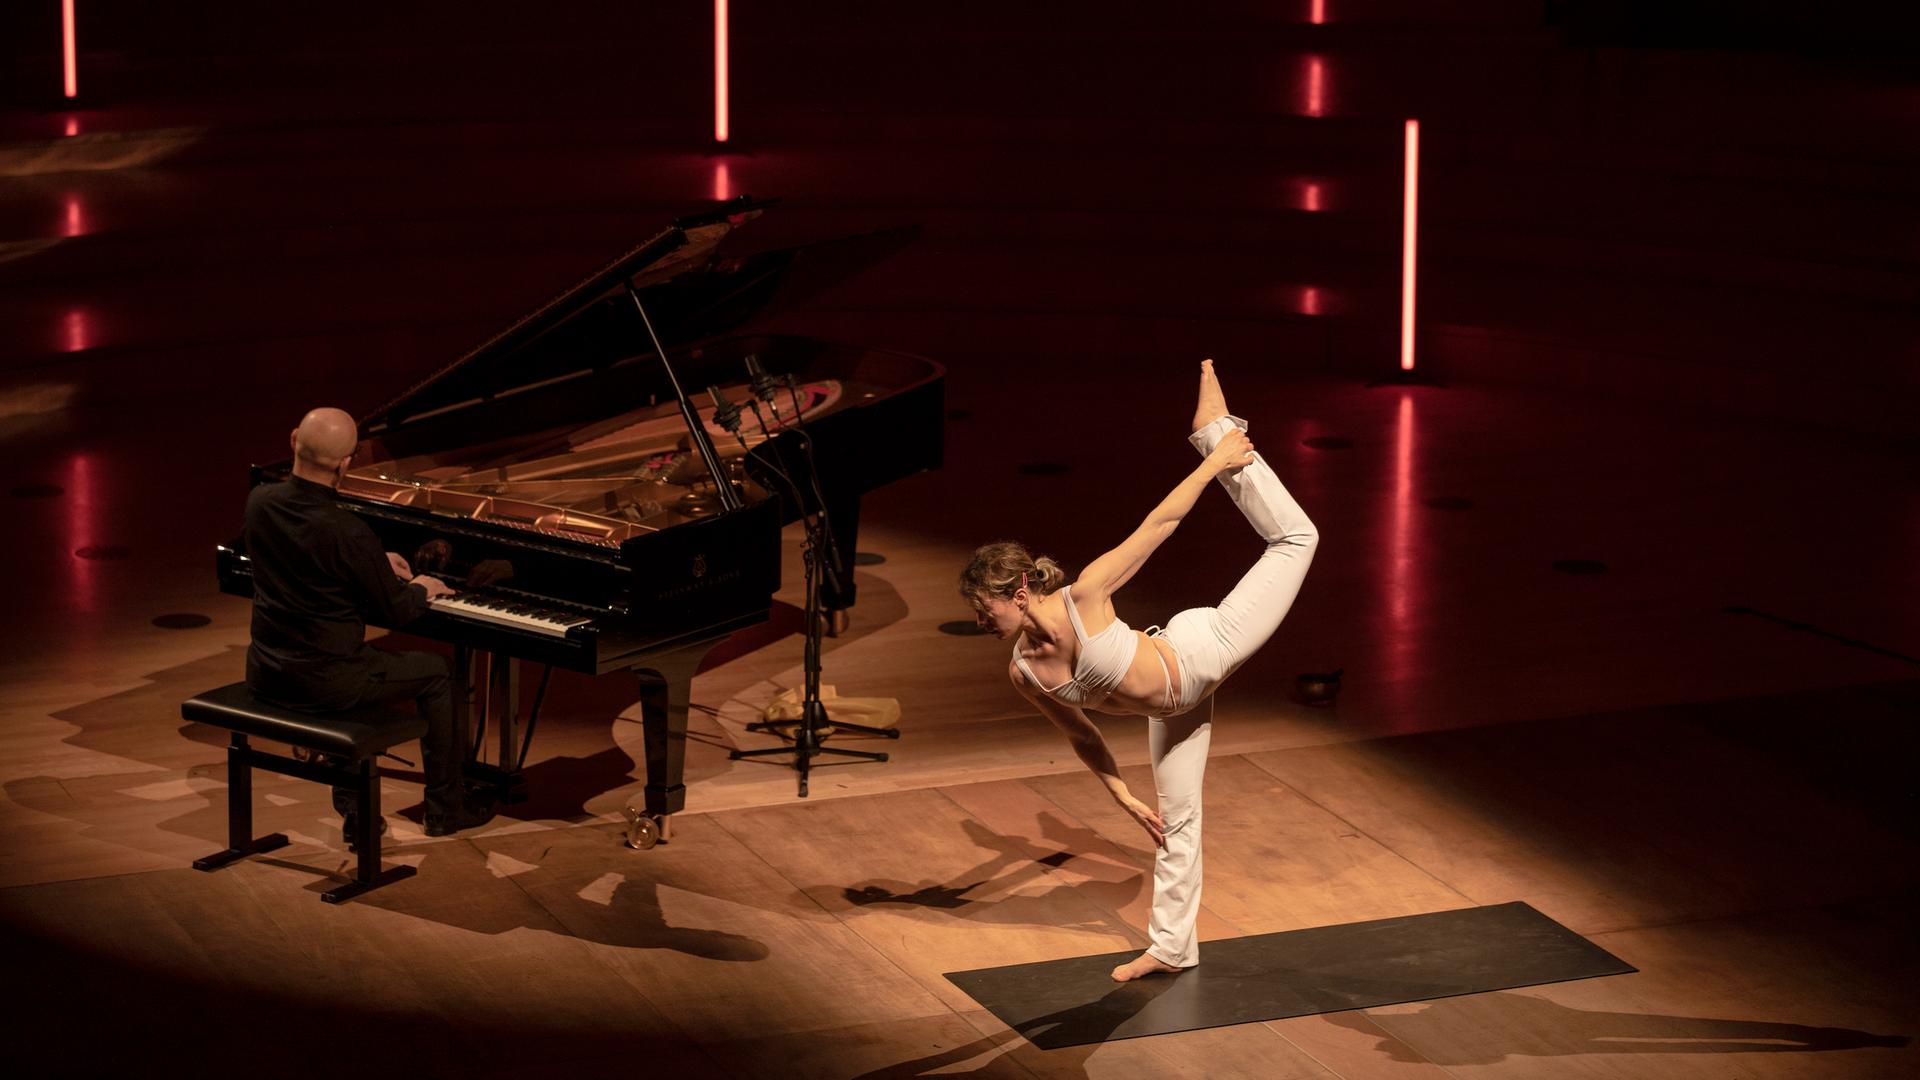 Anastasia Shevchenko nimmt auf der Bühne des Dresdner Kulturpalastes eine Yoga-Pose ein, links von ihr sitzt Ohad Ben-Ari an einem Flügel. Shevchenko trägt weiße Yoga-Kleidung.